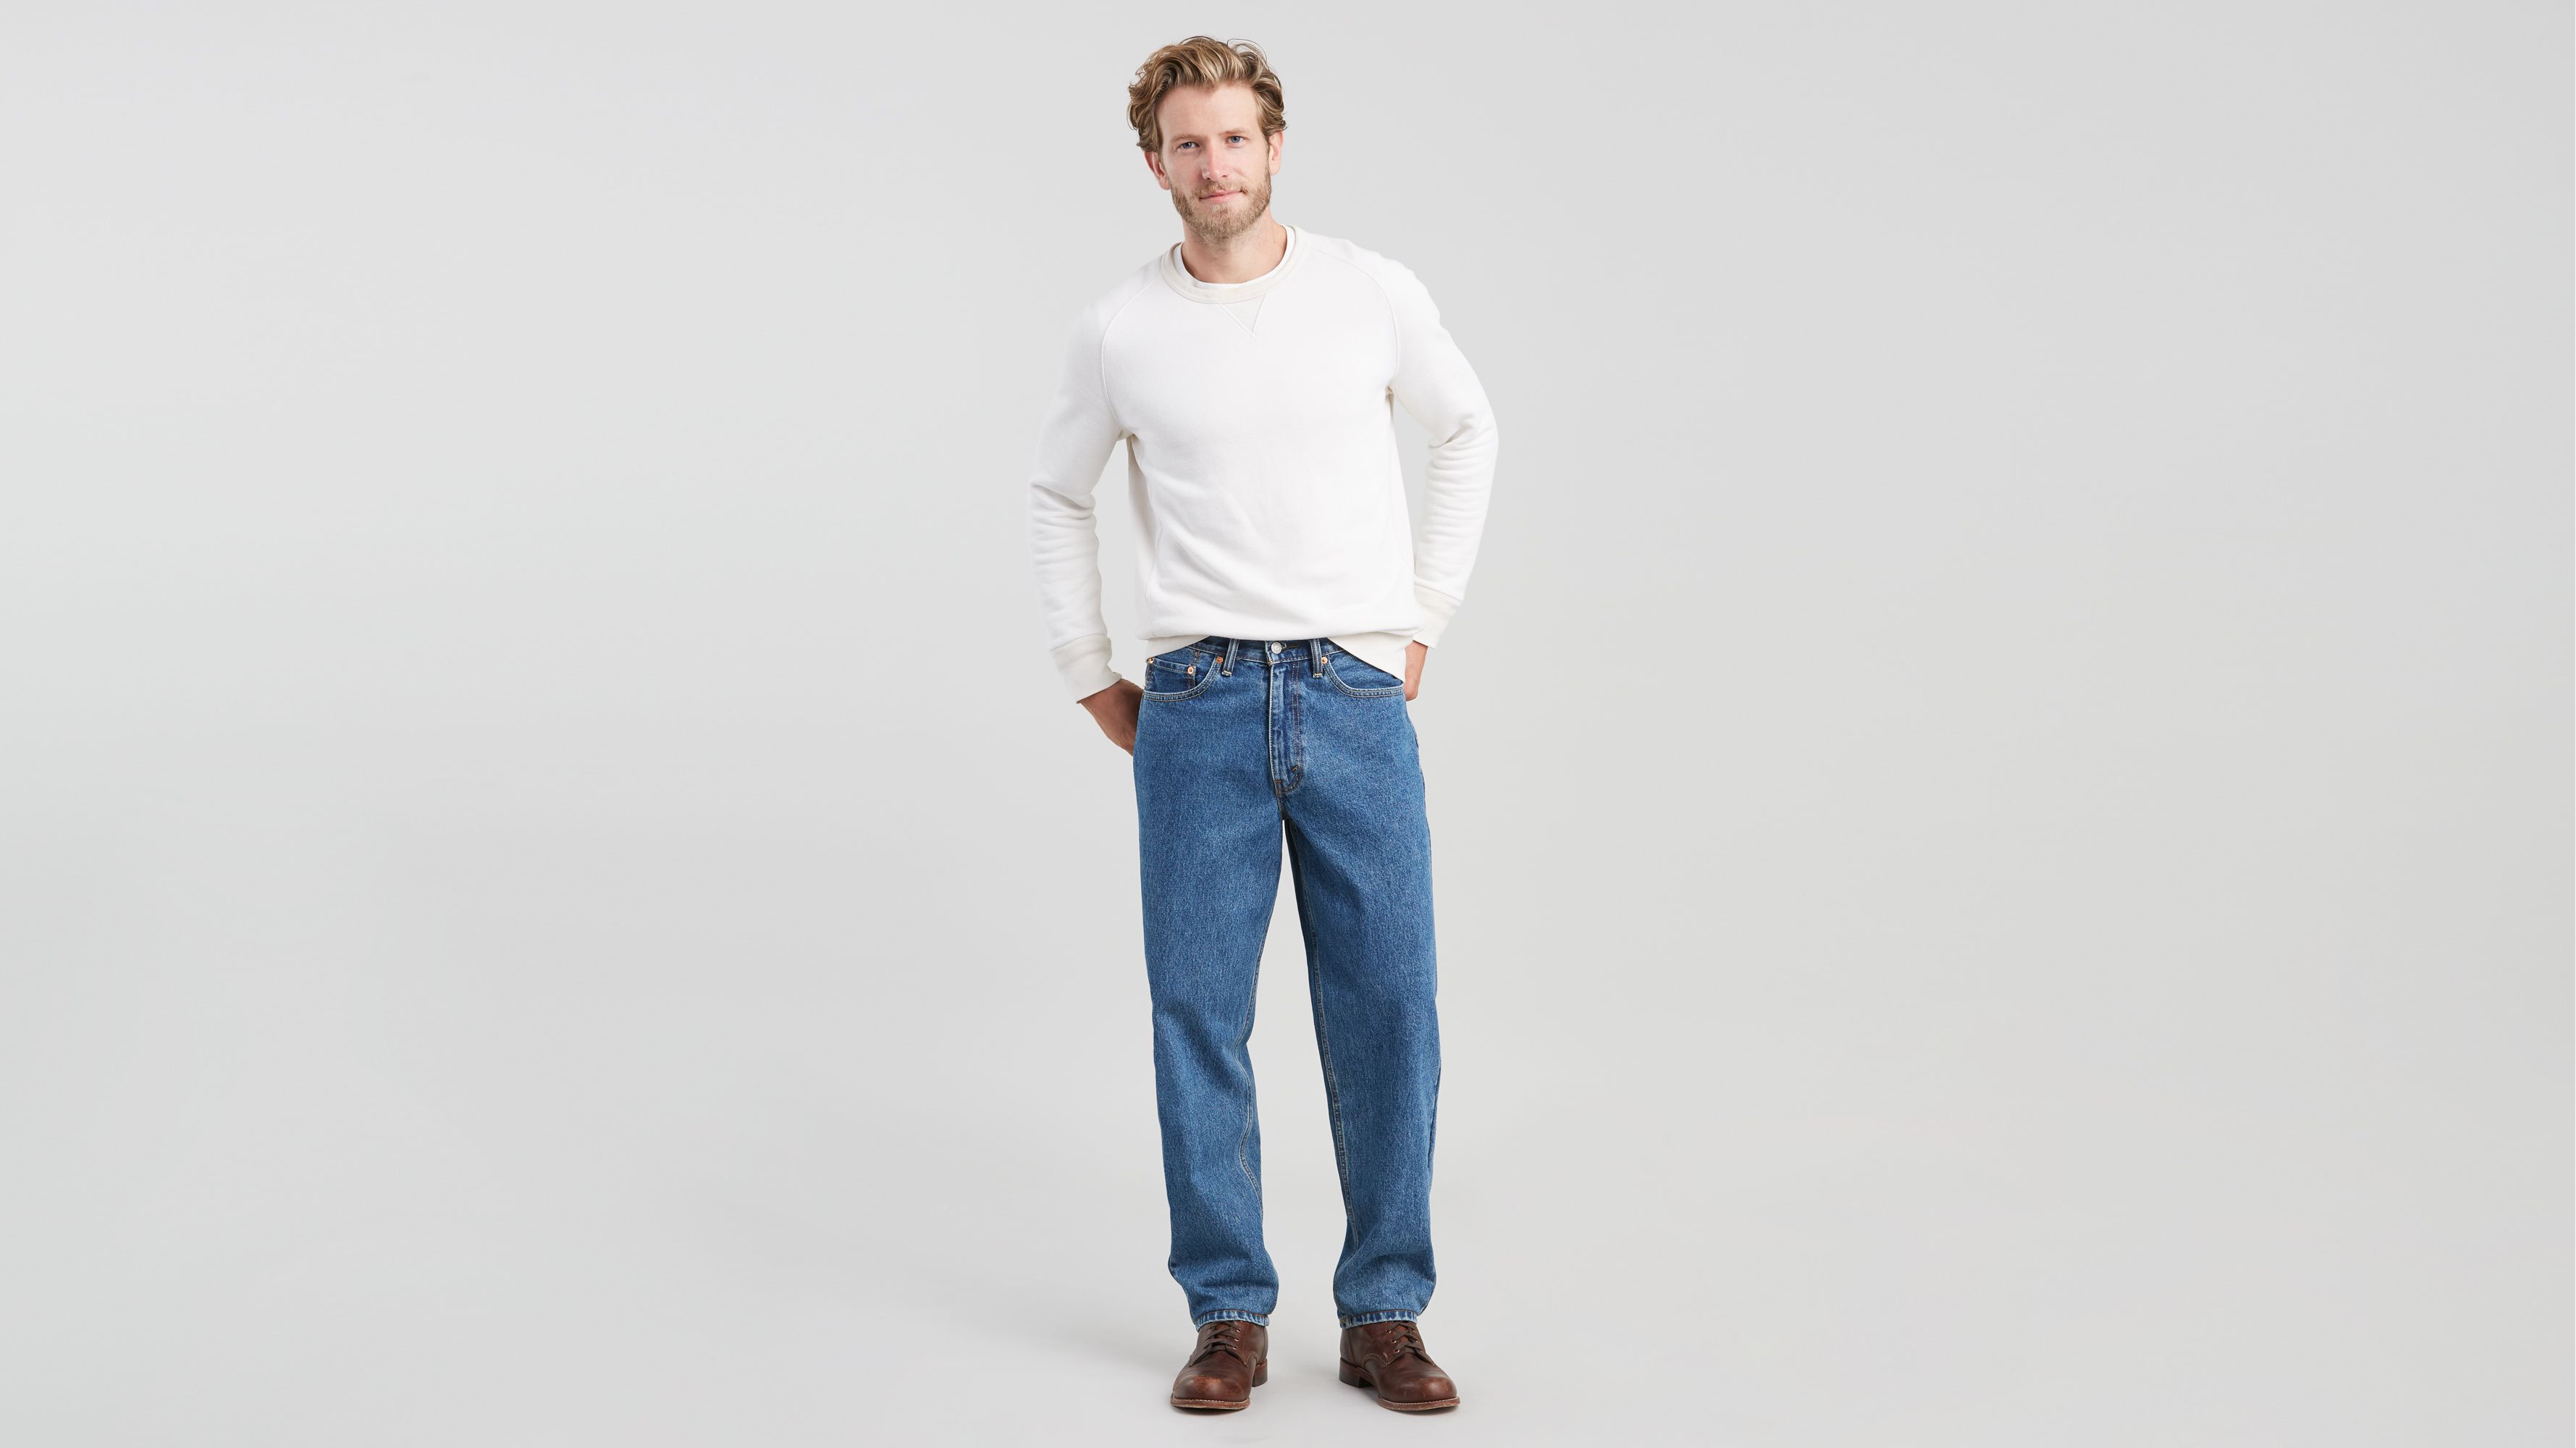 levis 560 jeans